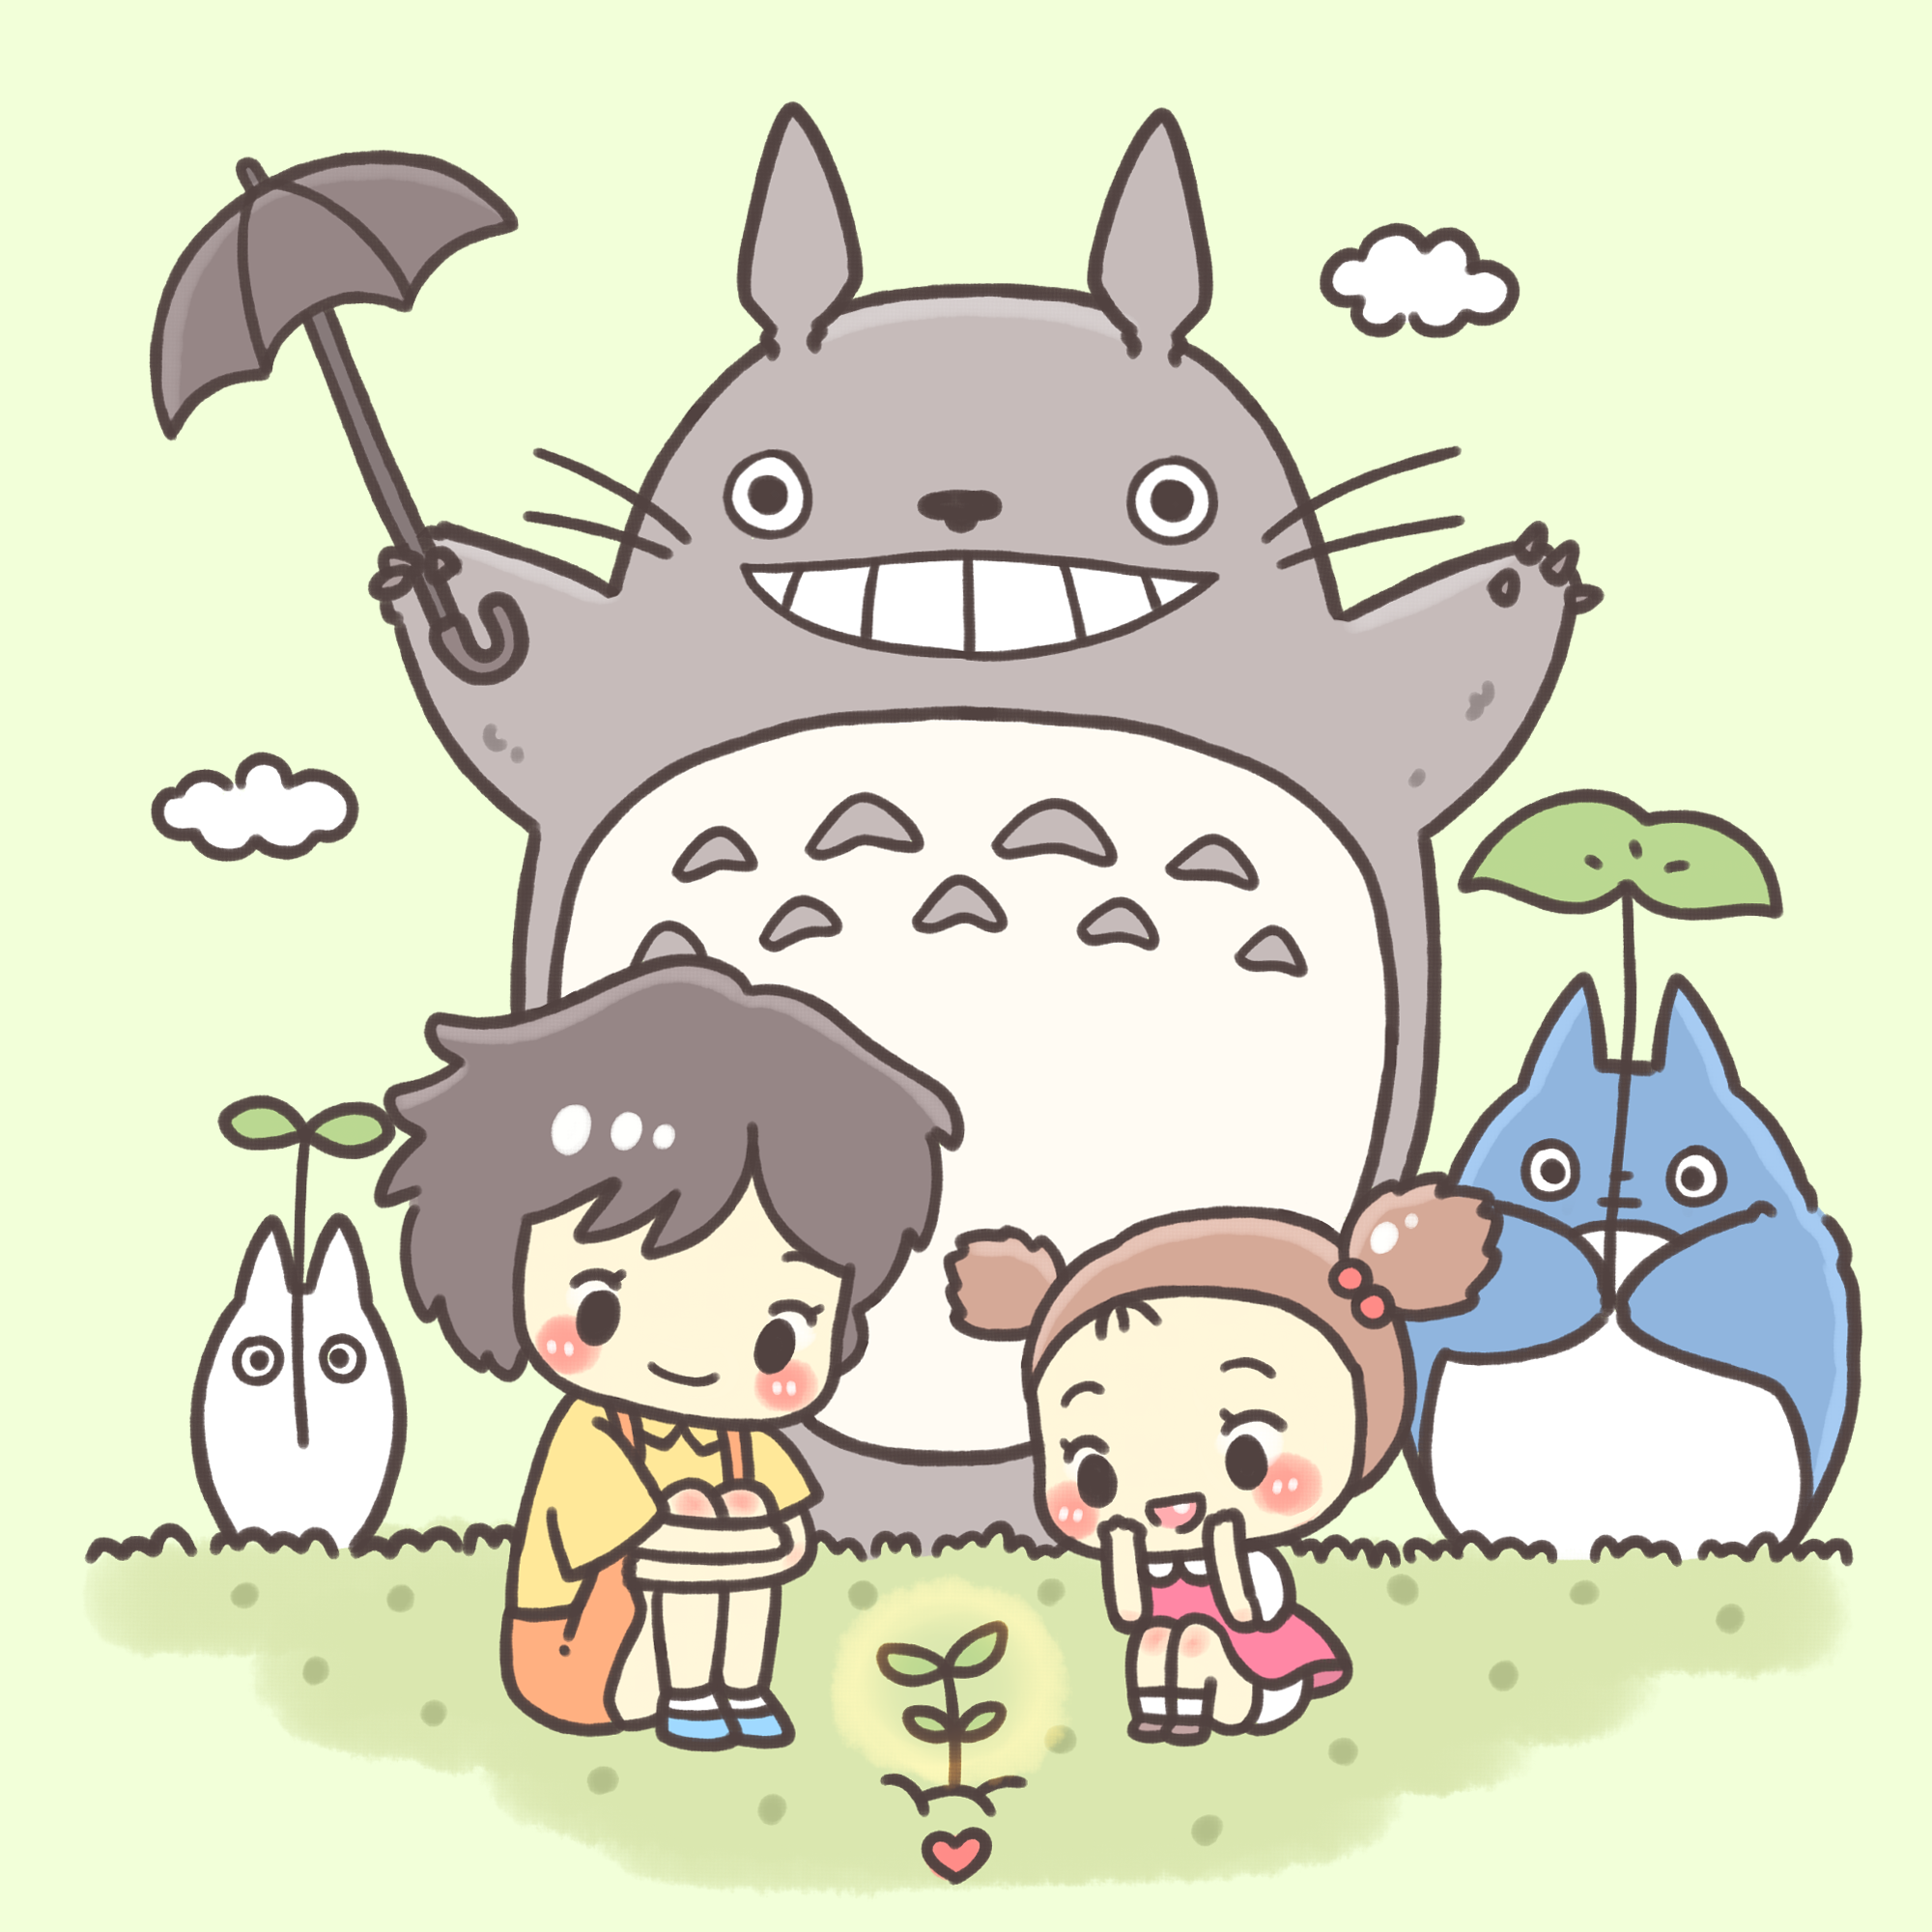 My Neighbor Totoro Quotes. QuotesGram